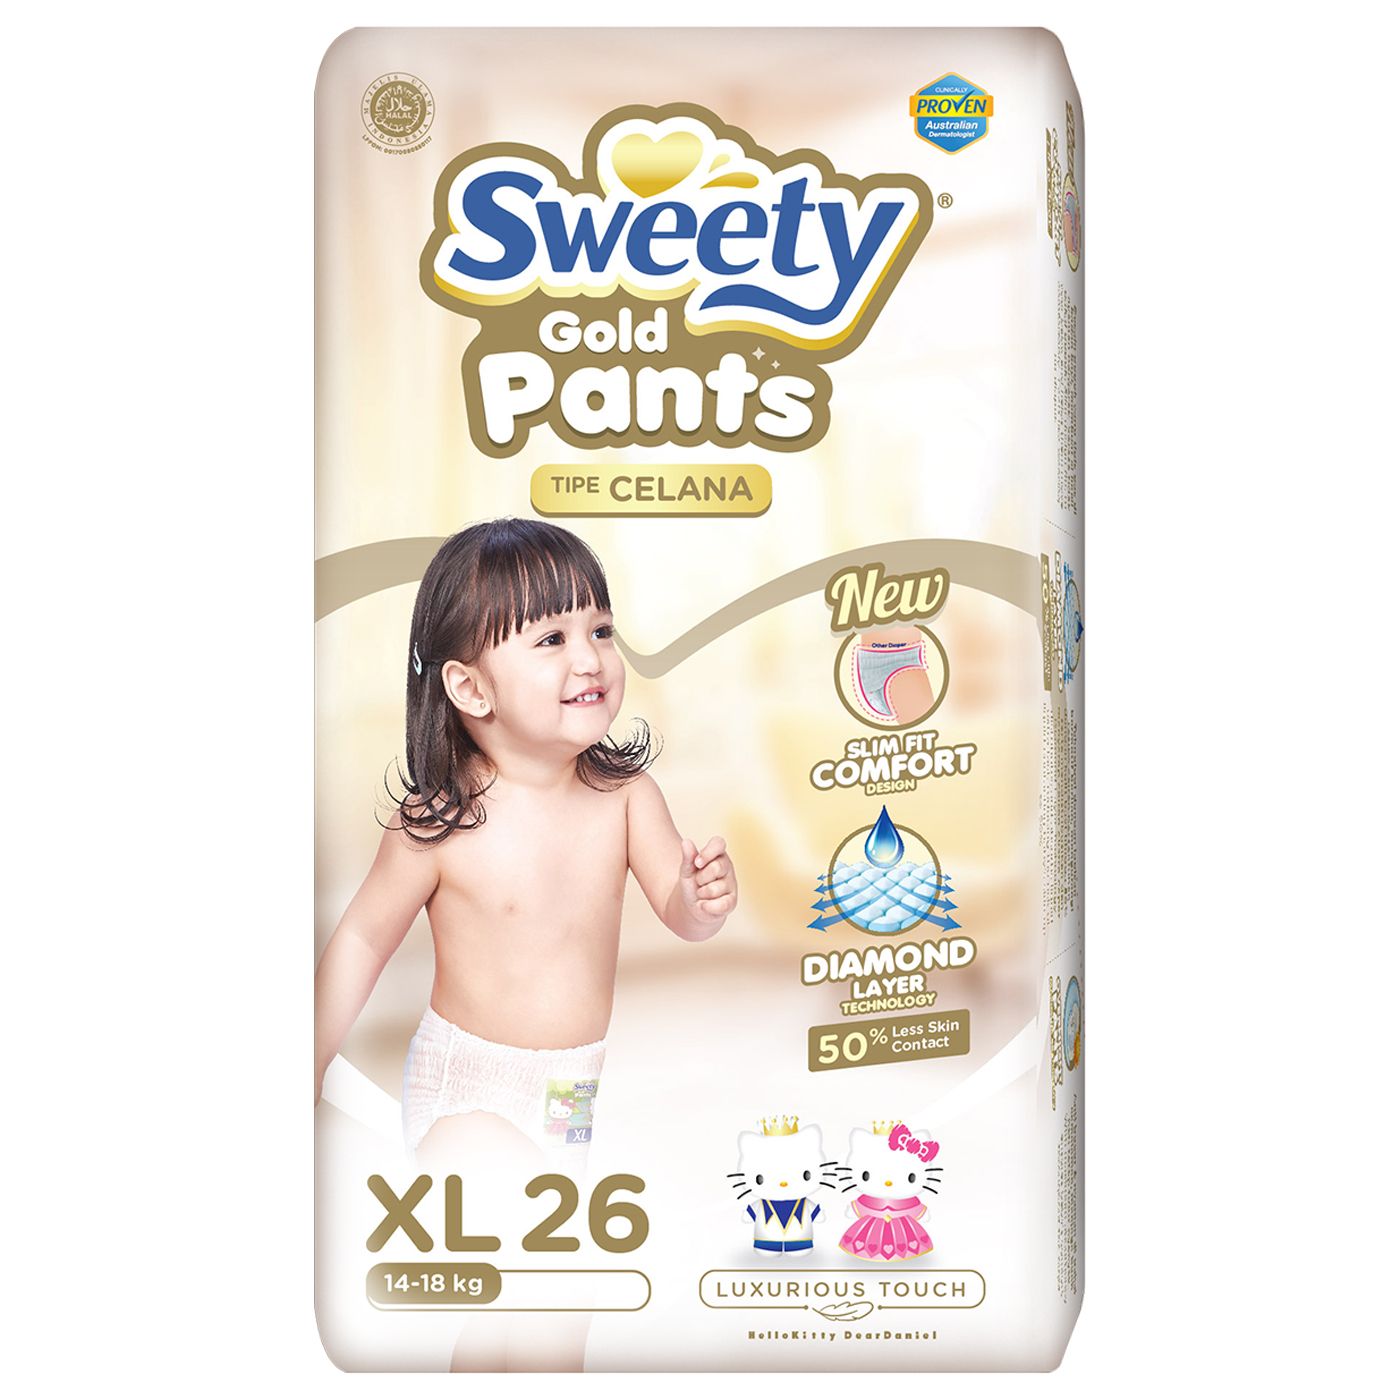 Sweety Pantz Gold Regular Pack XL 26 - 2